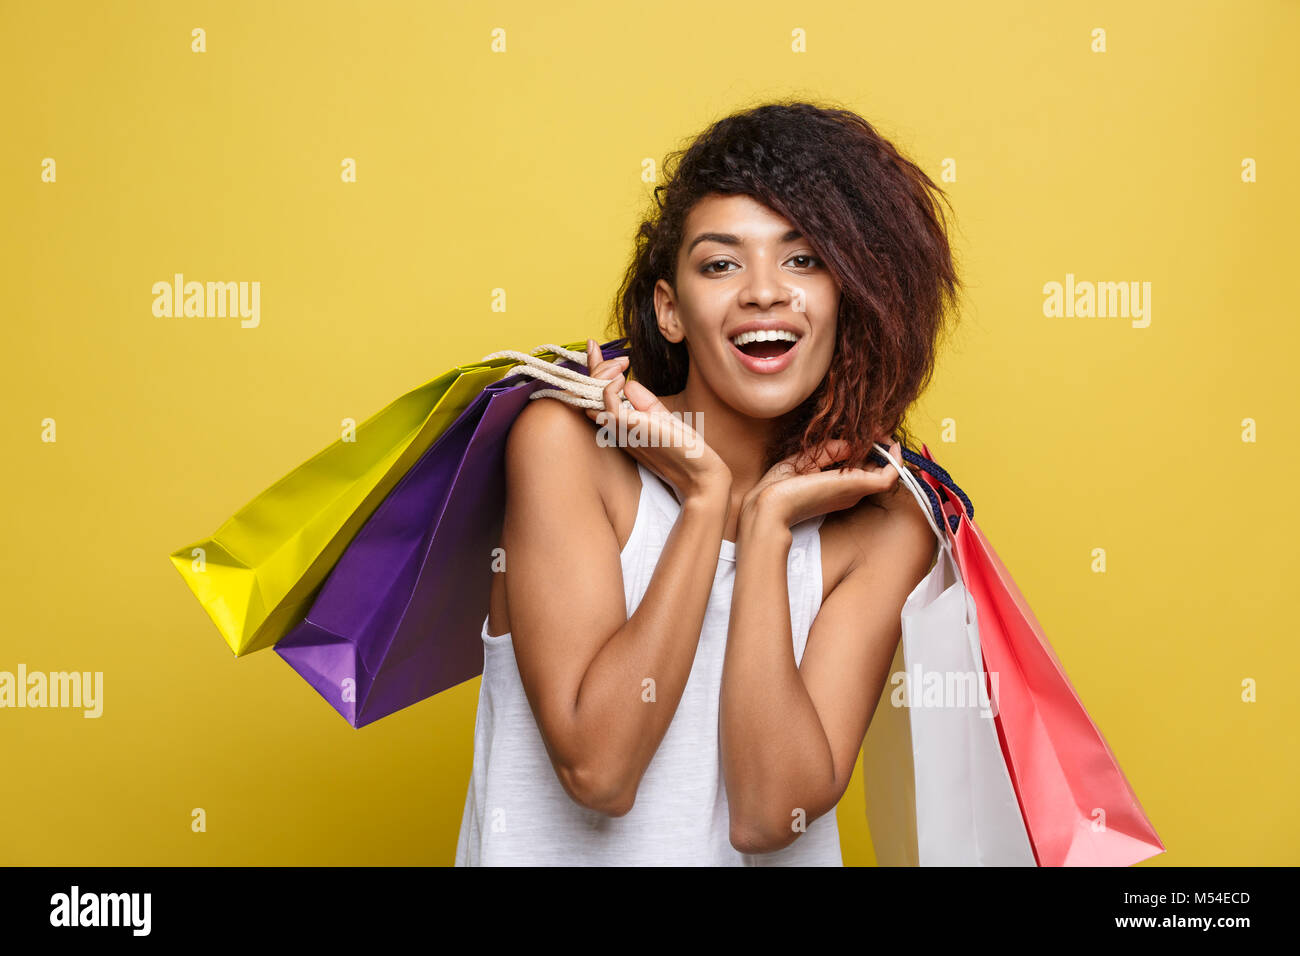 Shopping Concept - Portrait de Portrait young African woman smiling belle attrayante et joyeuse avec sac shopping coloré. Pastel jaune fond mur. Copier l'espace. Banque D'Images